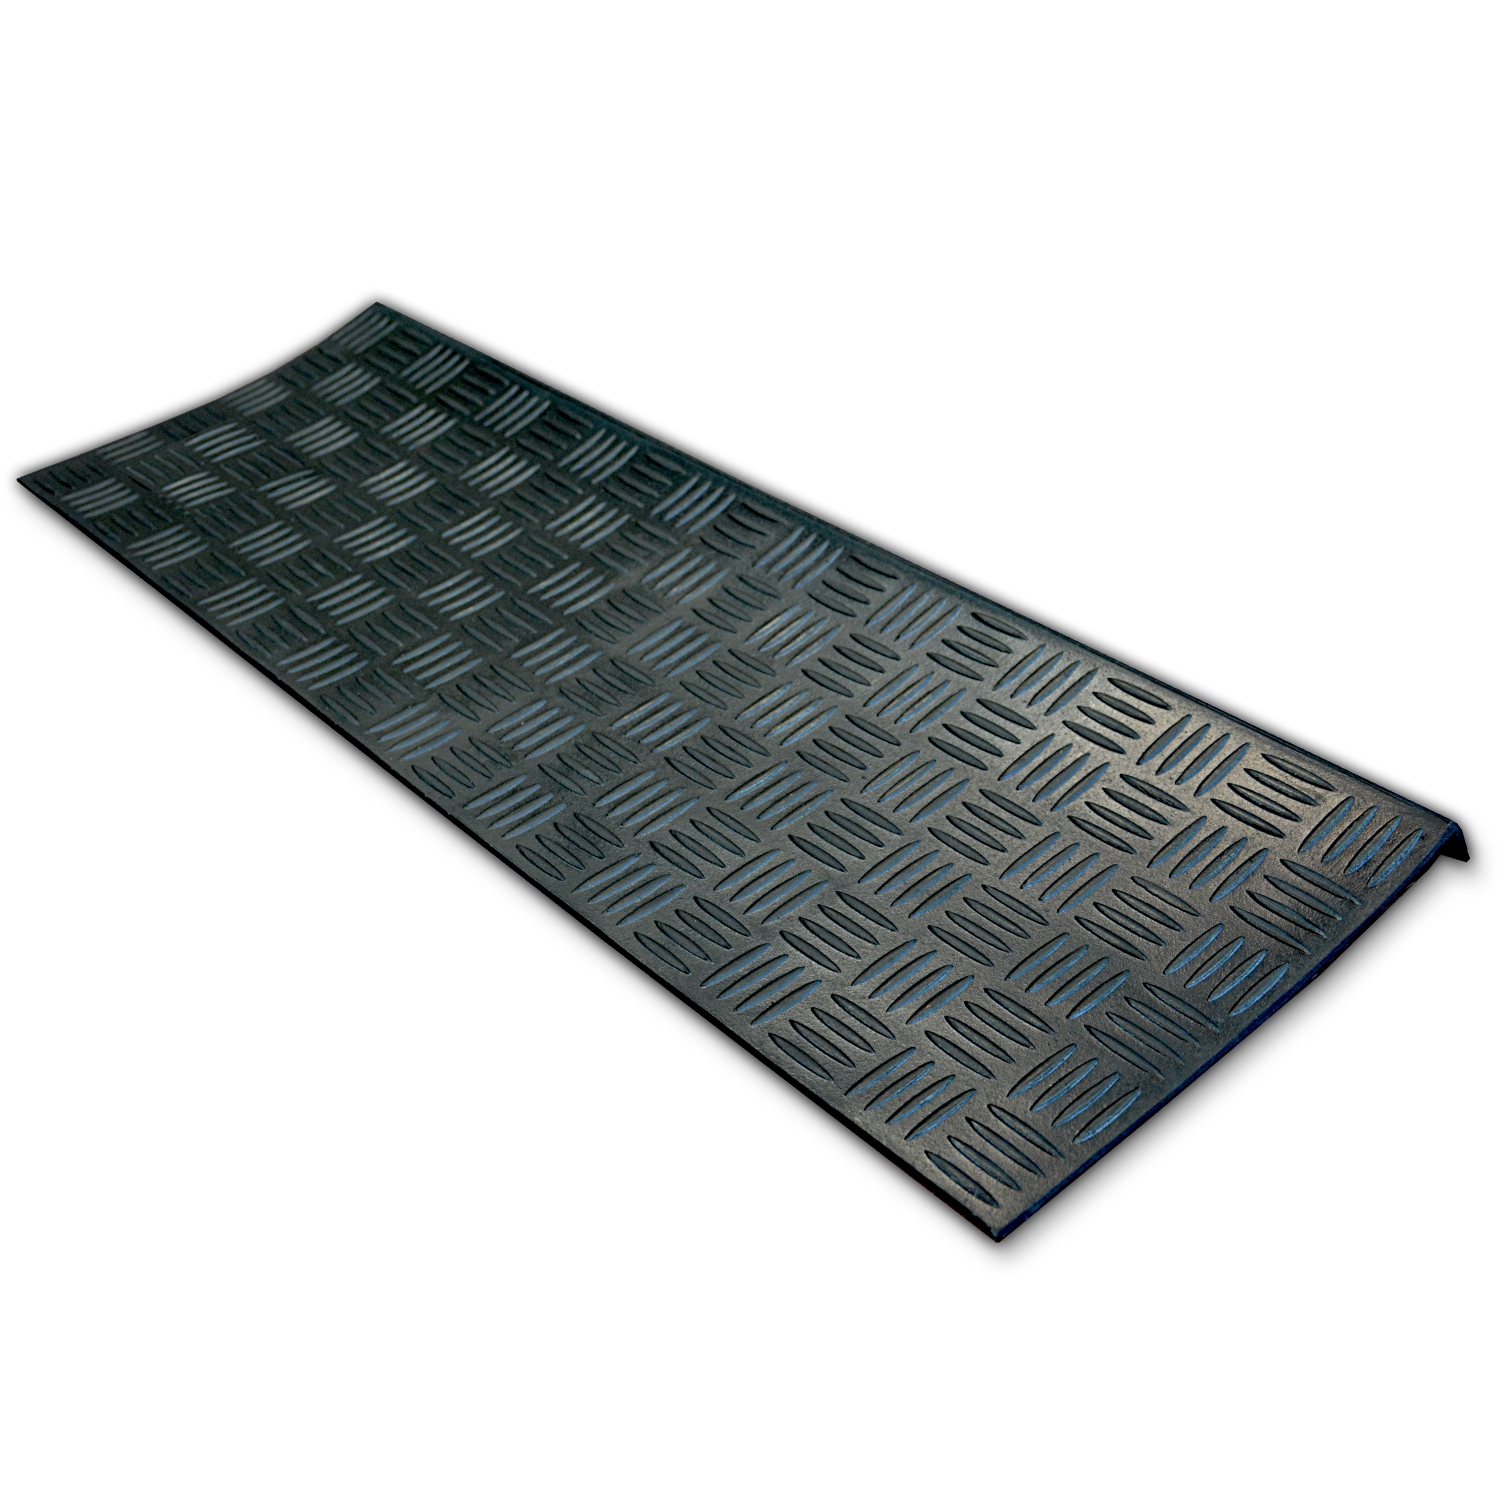 8 x 30 grigio tappetino antiscivolo per scale Un set di 7 tappetini antiscivolo in gomma antiscivolo o antiscivolo 